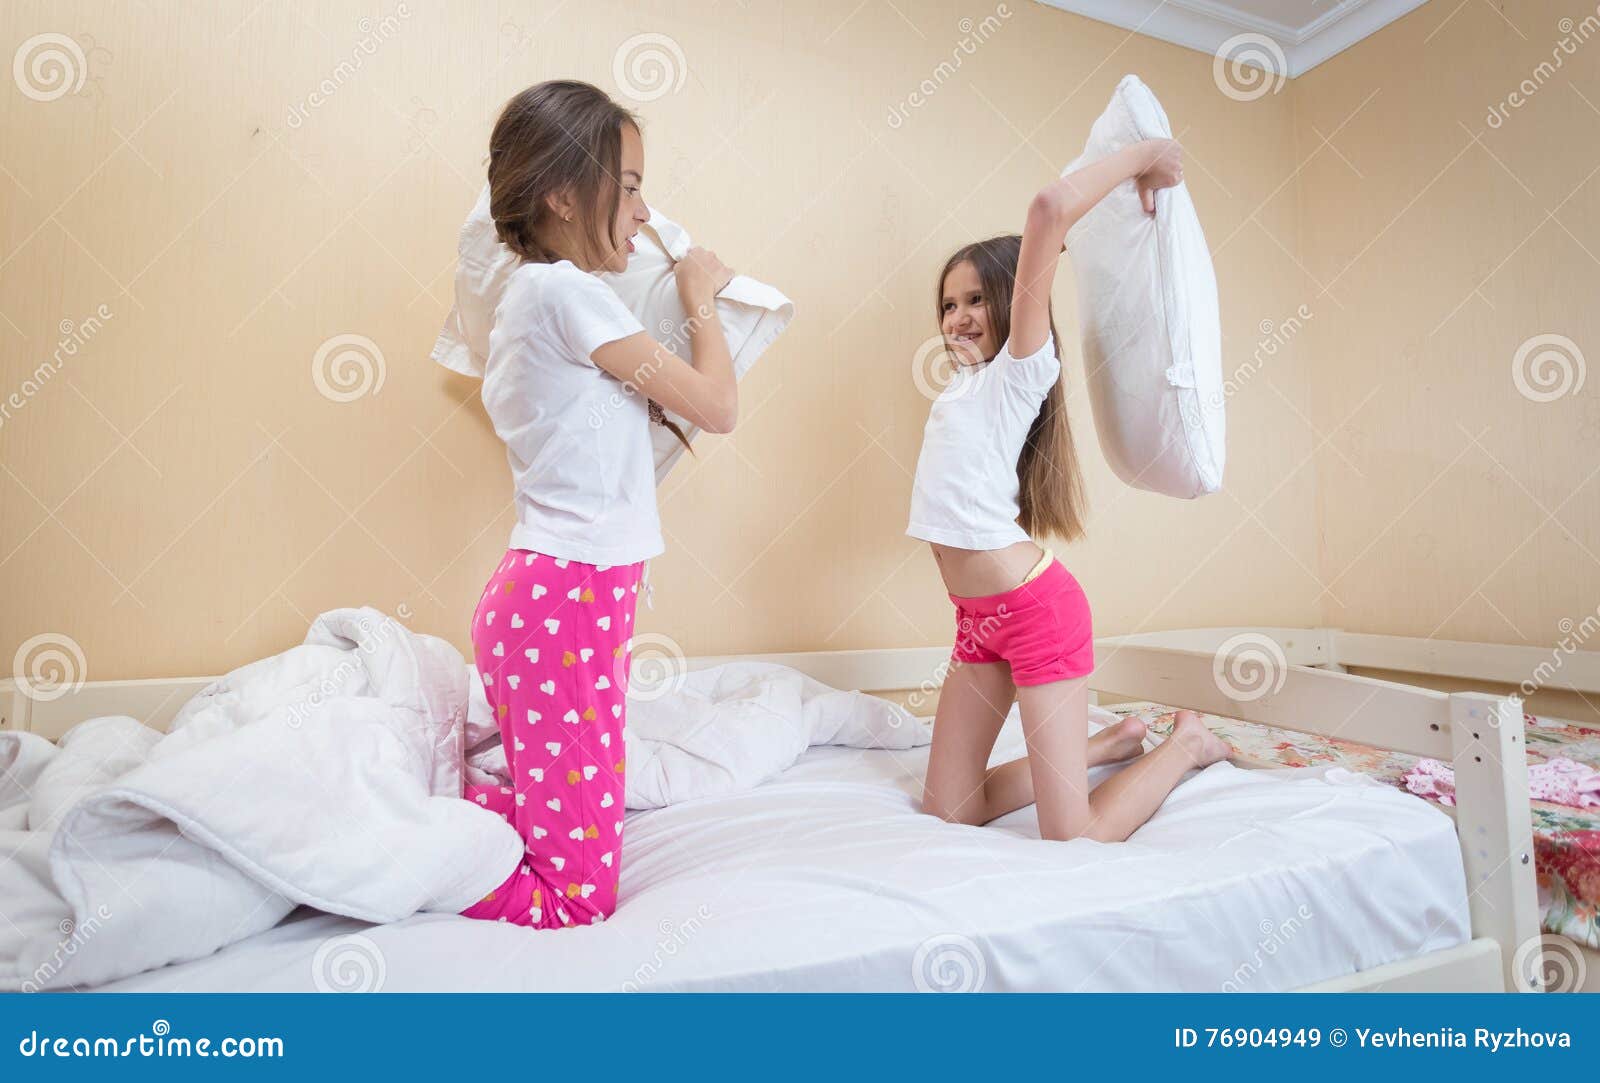 Сестры в пижамах кровать. Пижама для подростка девочки. Сестра в пижаме. Кровать для девочки 12 лет.